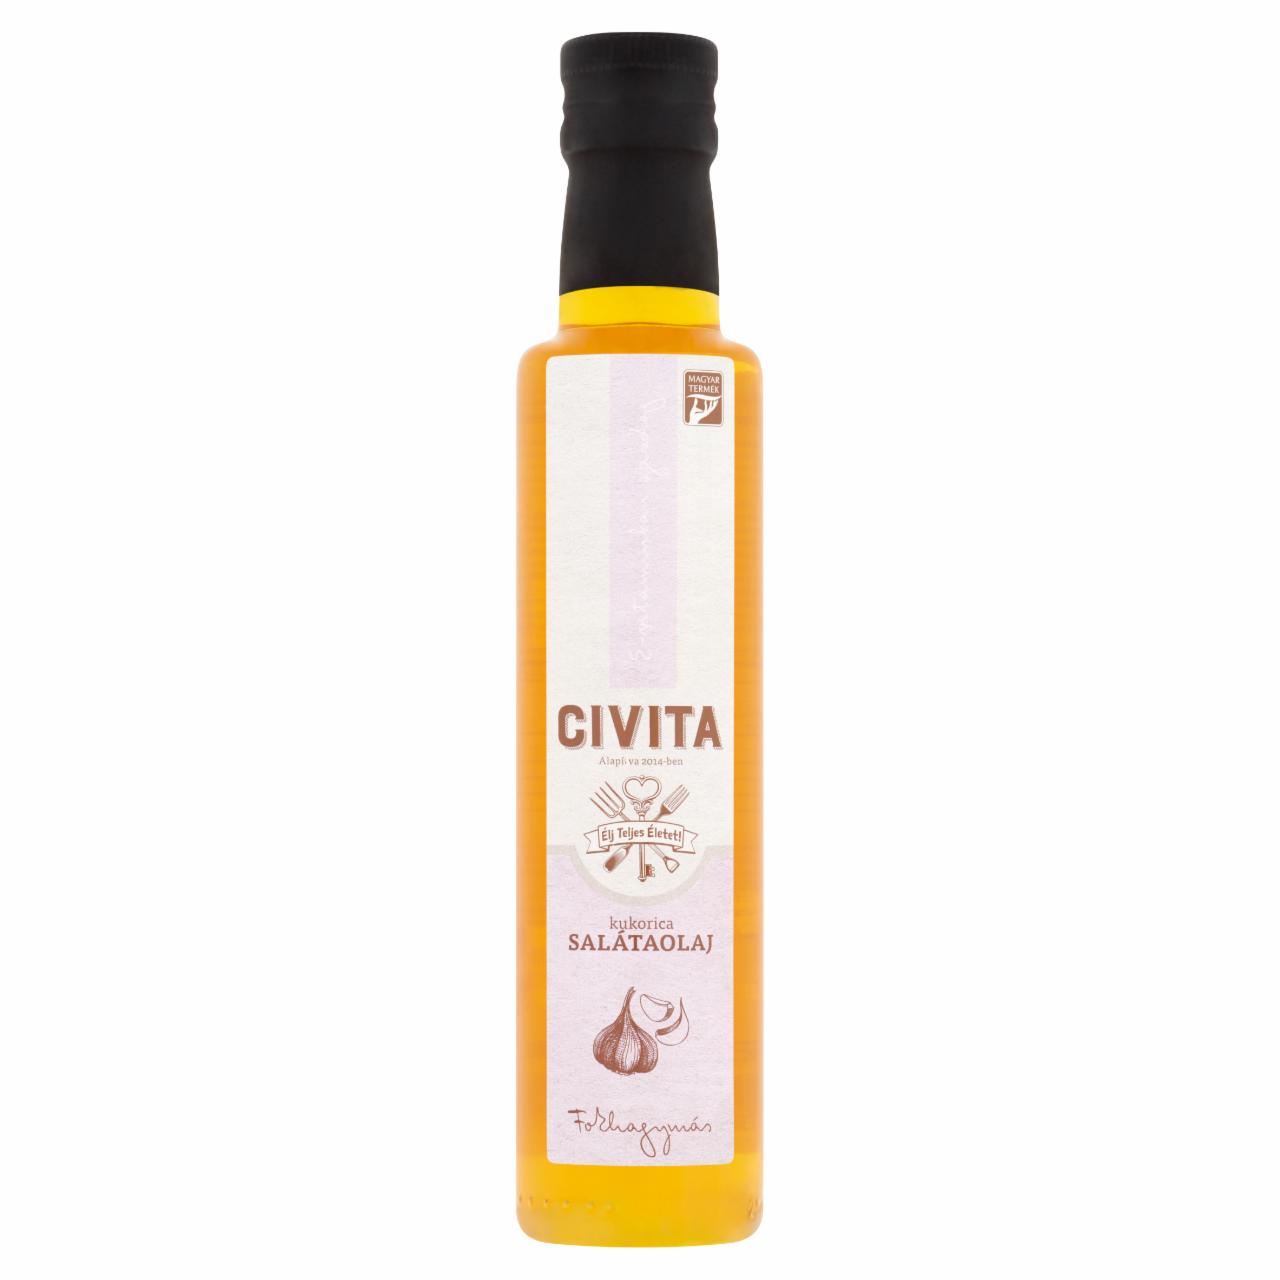 Képek - Civita fokhagymás kukorica salátaolaj 250 ml